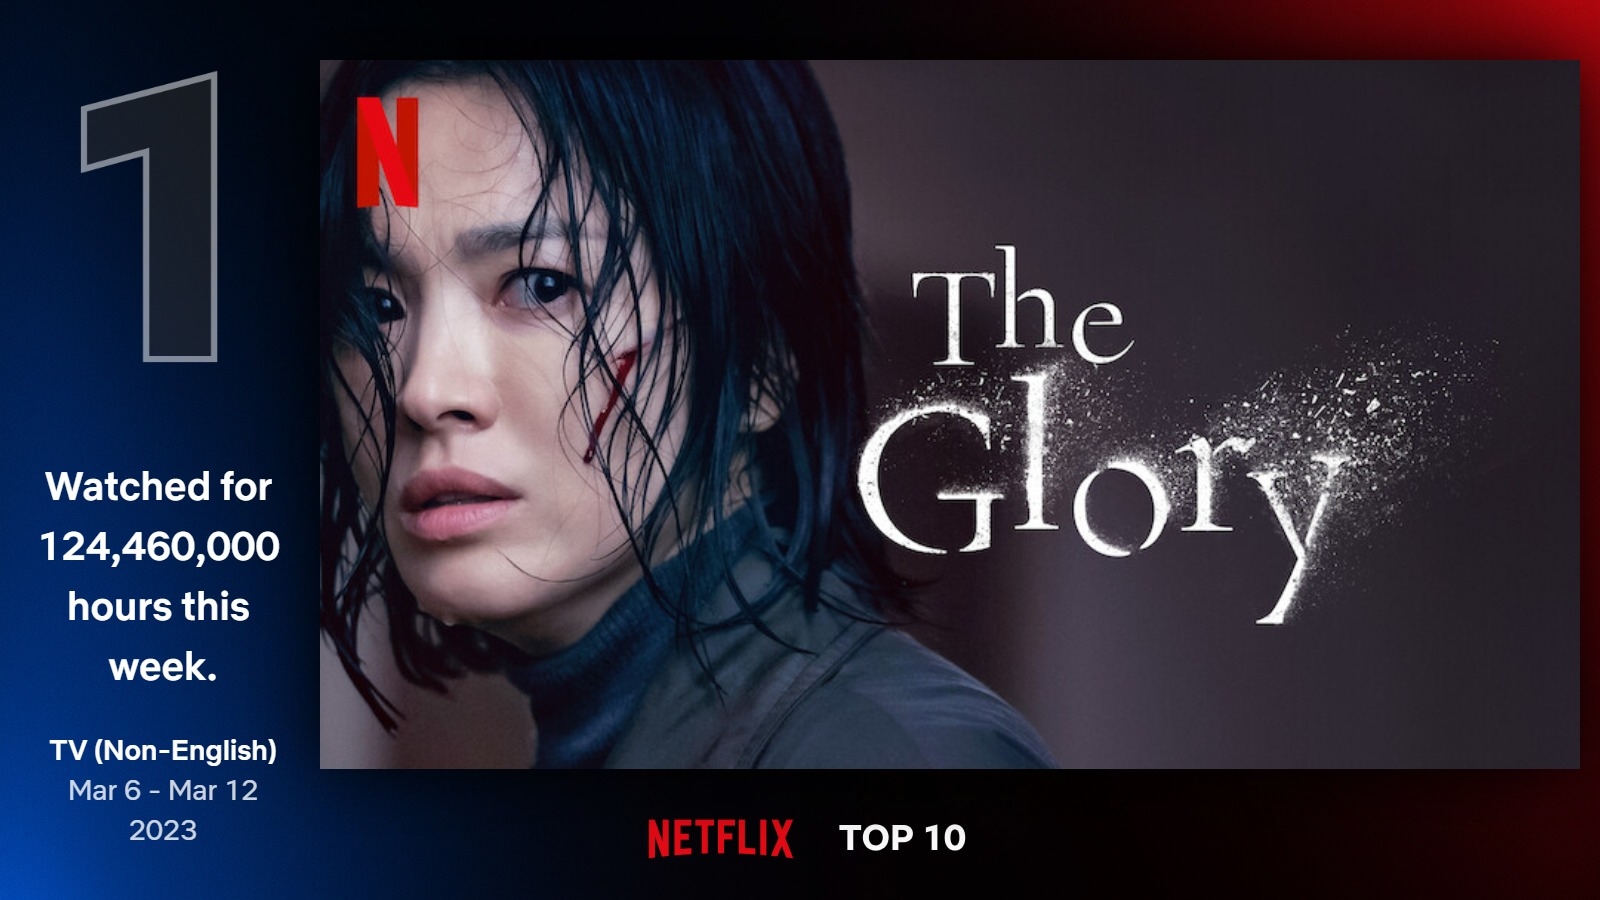 ยืนหนึ่งสมศักดิ์ศรี! The Glory ภาค 2 ครองอันดับ 1 ทั่วโลกบนชาร์ต Netflix ในสัปดาห์แรกที่เปิดตัว ด้วยยอดรับชมสูงกว่า 124 ล้านชั่วโมง